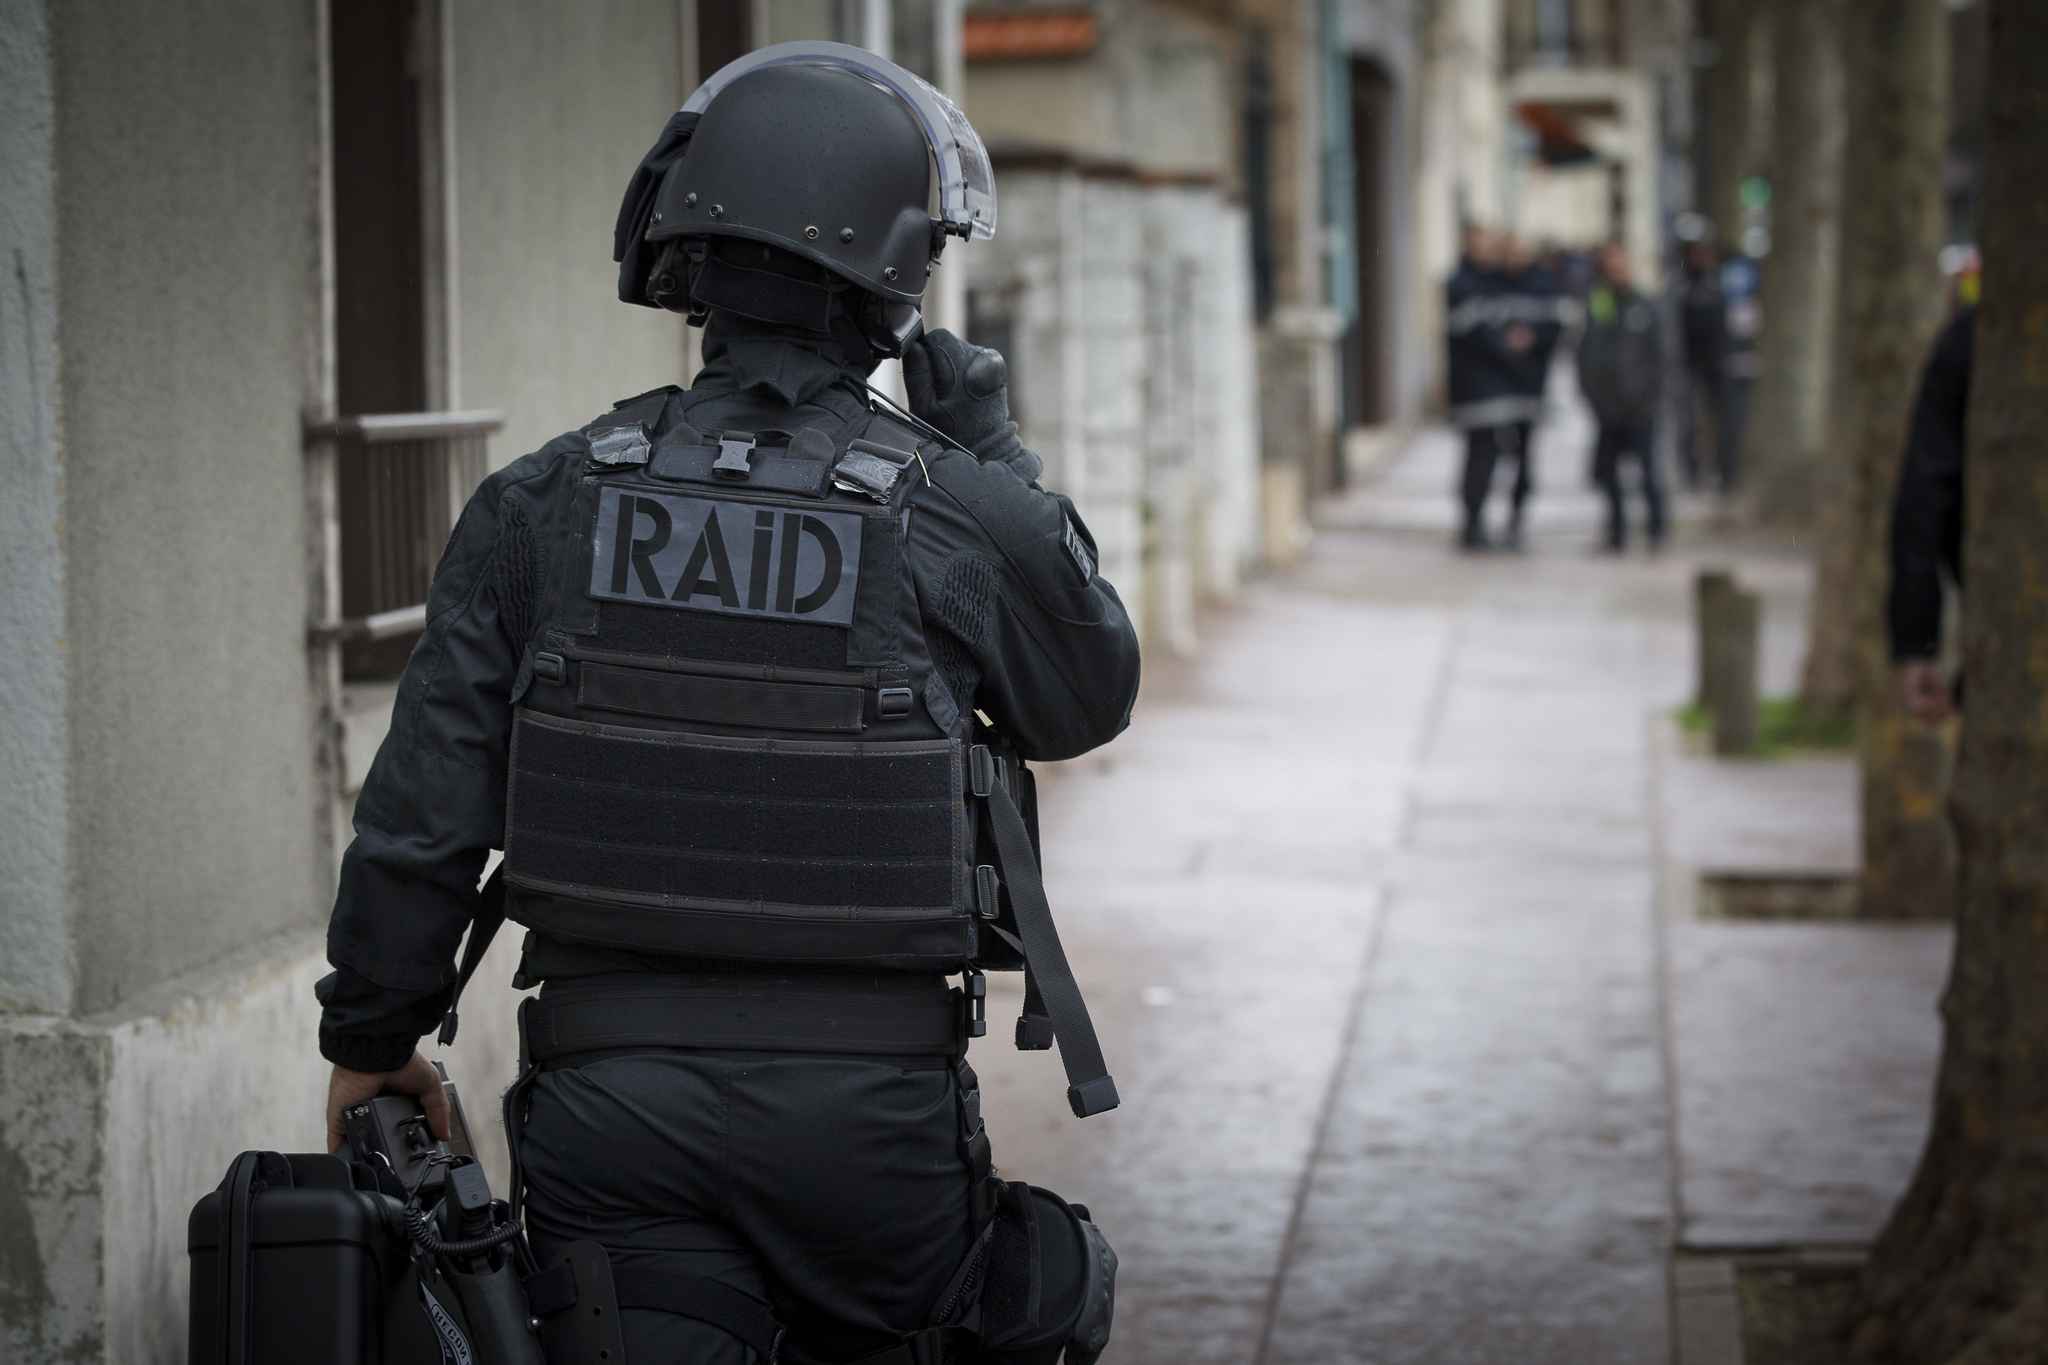 Opération de police terminée à Roubaix, un des preneurs d’otages a été tué